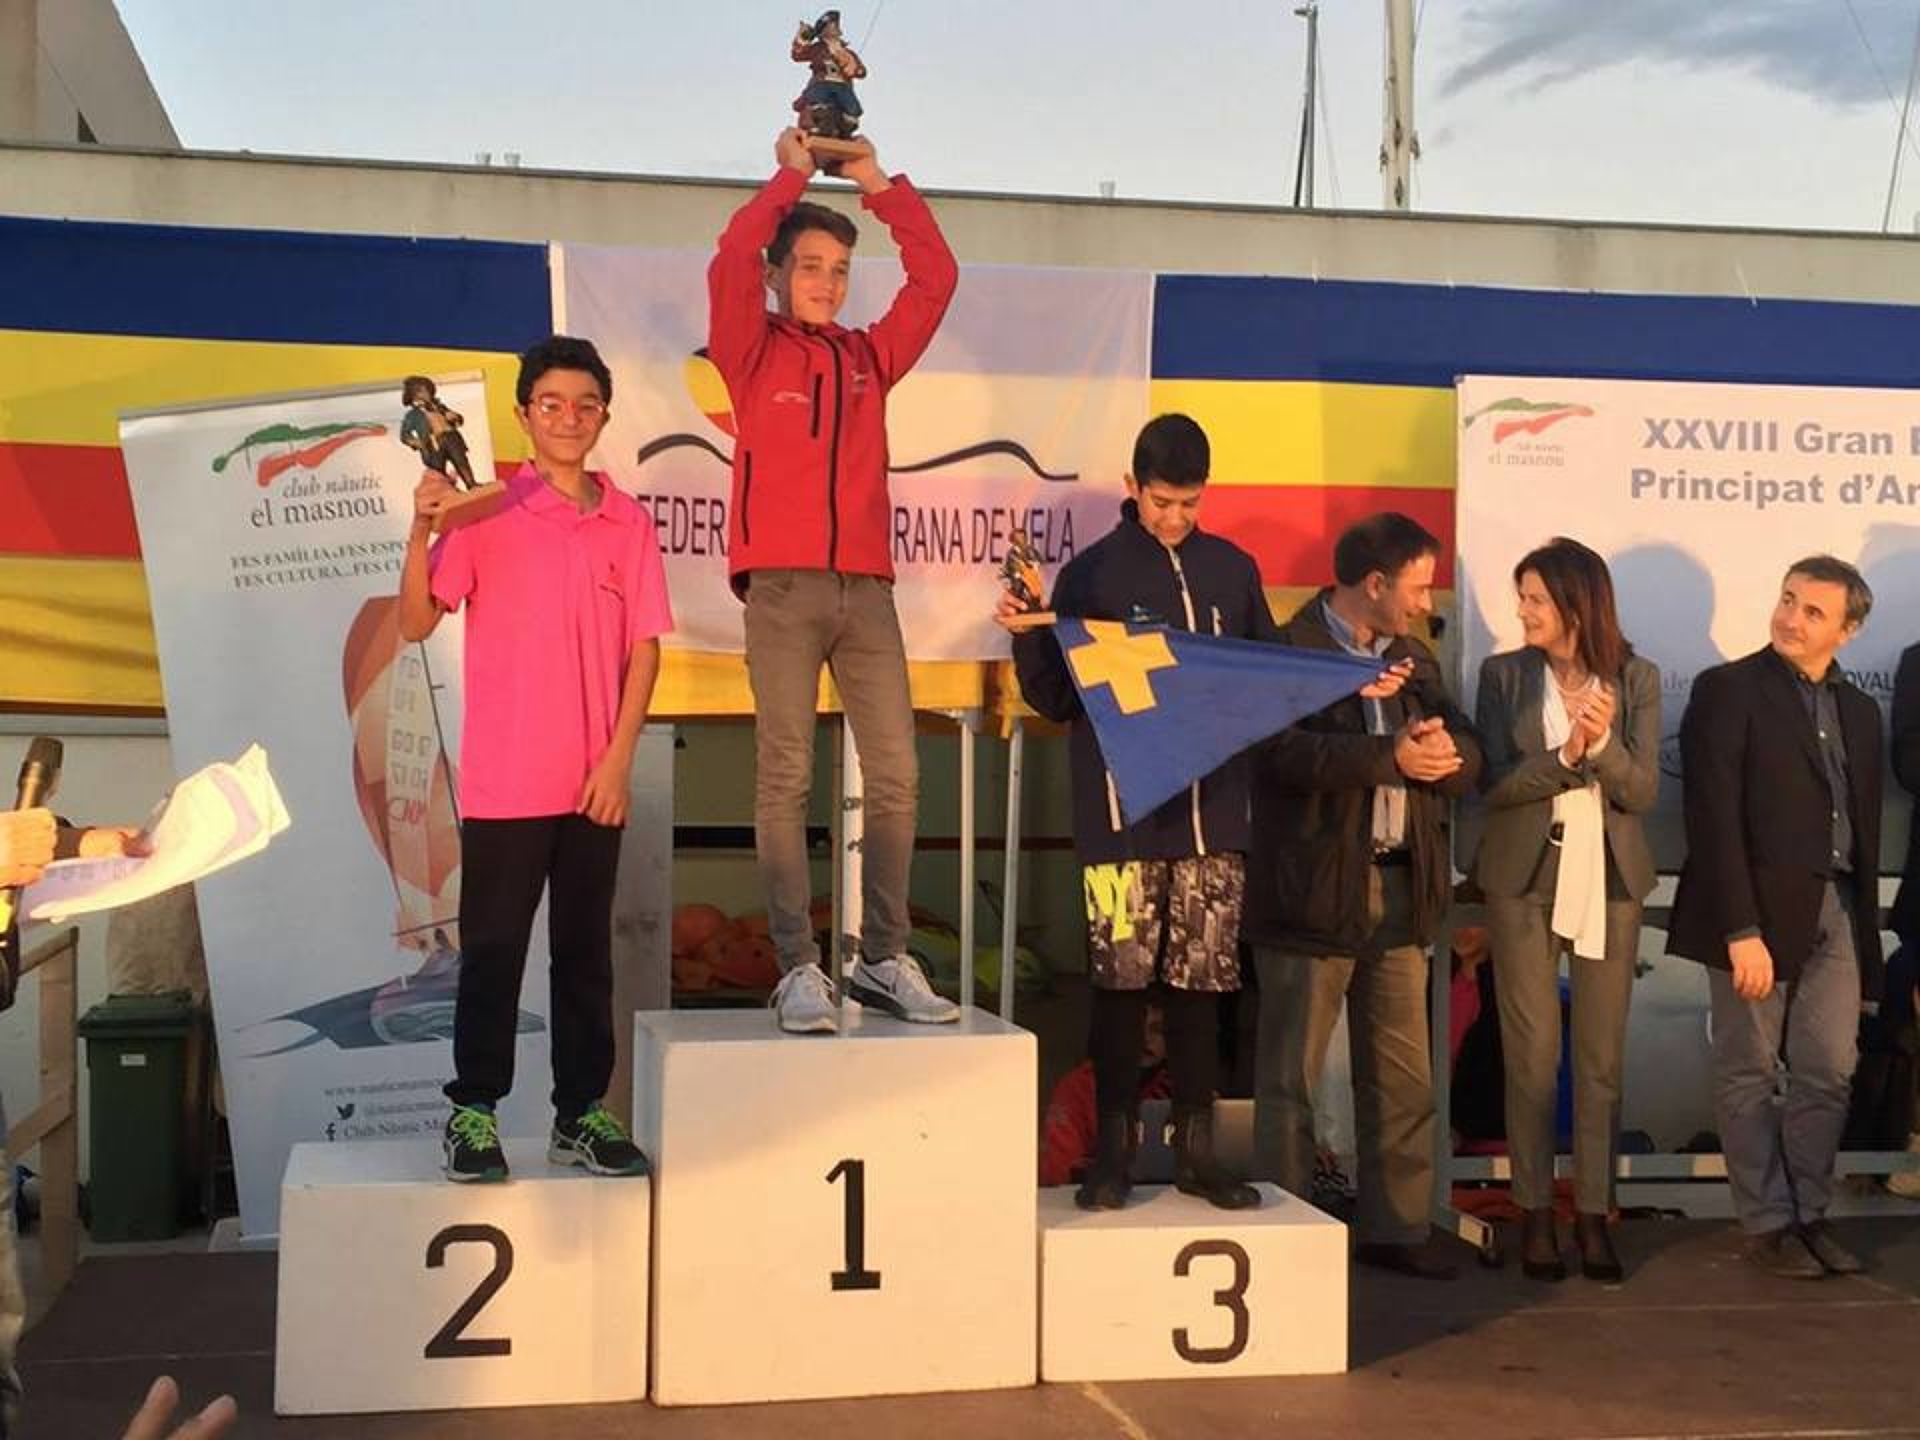 Aleix Manresa torna a pujar al podi al Gran Premi Principat d'Andorra a Mansou